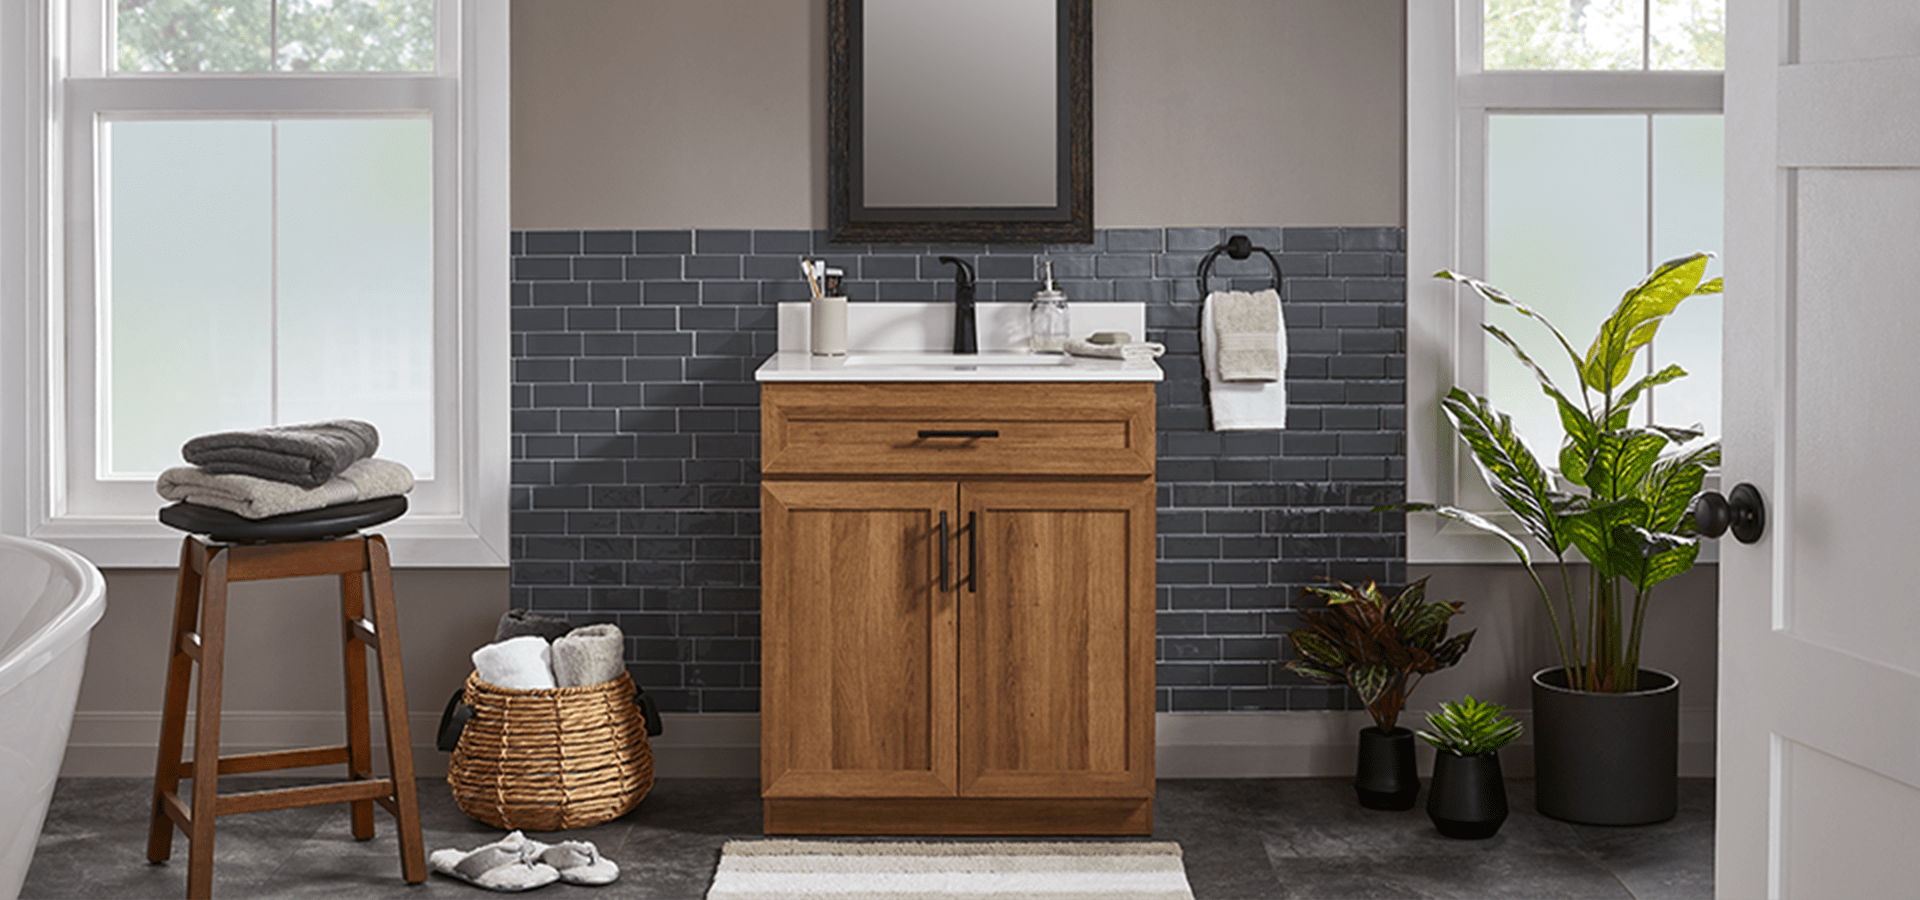 Salle de bain avec meuble-lavabo au fini bois naturel, tabouret en bois foncé, panier Canvas Cape, miroir au cadre noir.